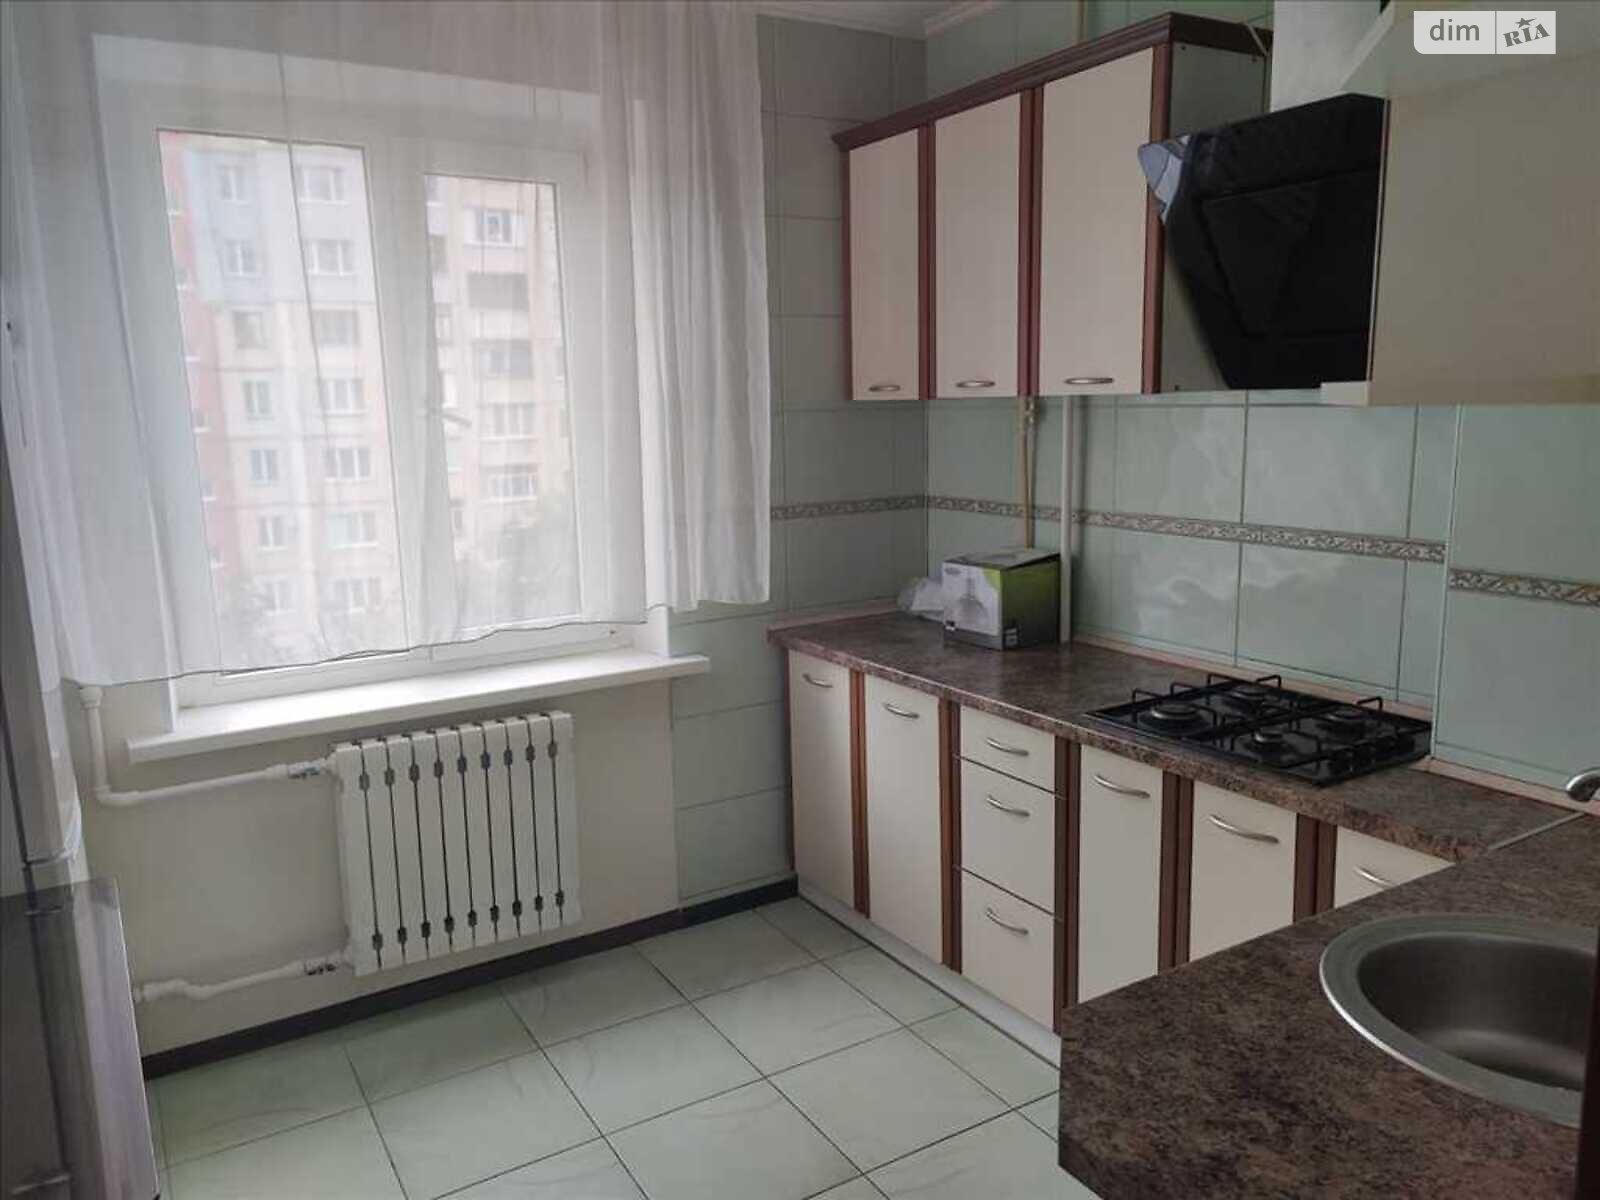 Продажа однокомнатной квартиры в Полтаве, на ул. Огнивская, район Сады 3 (Огнивка) фото 1